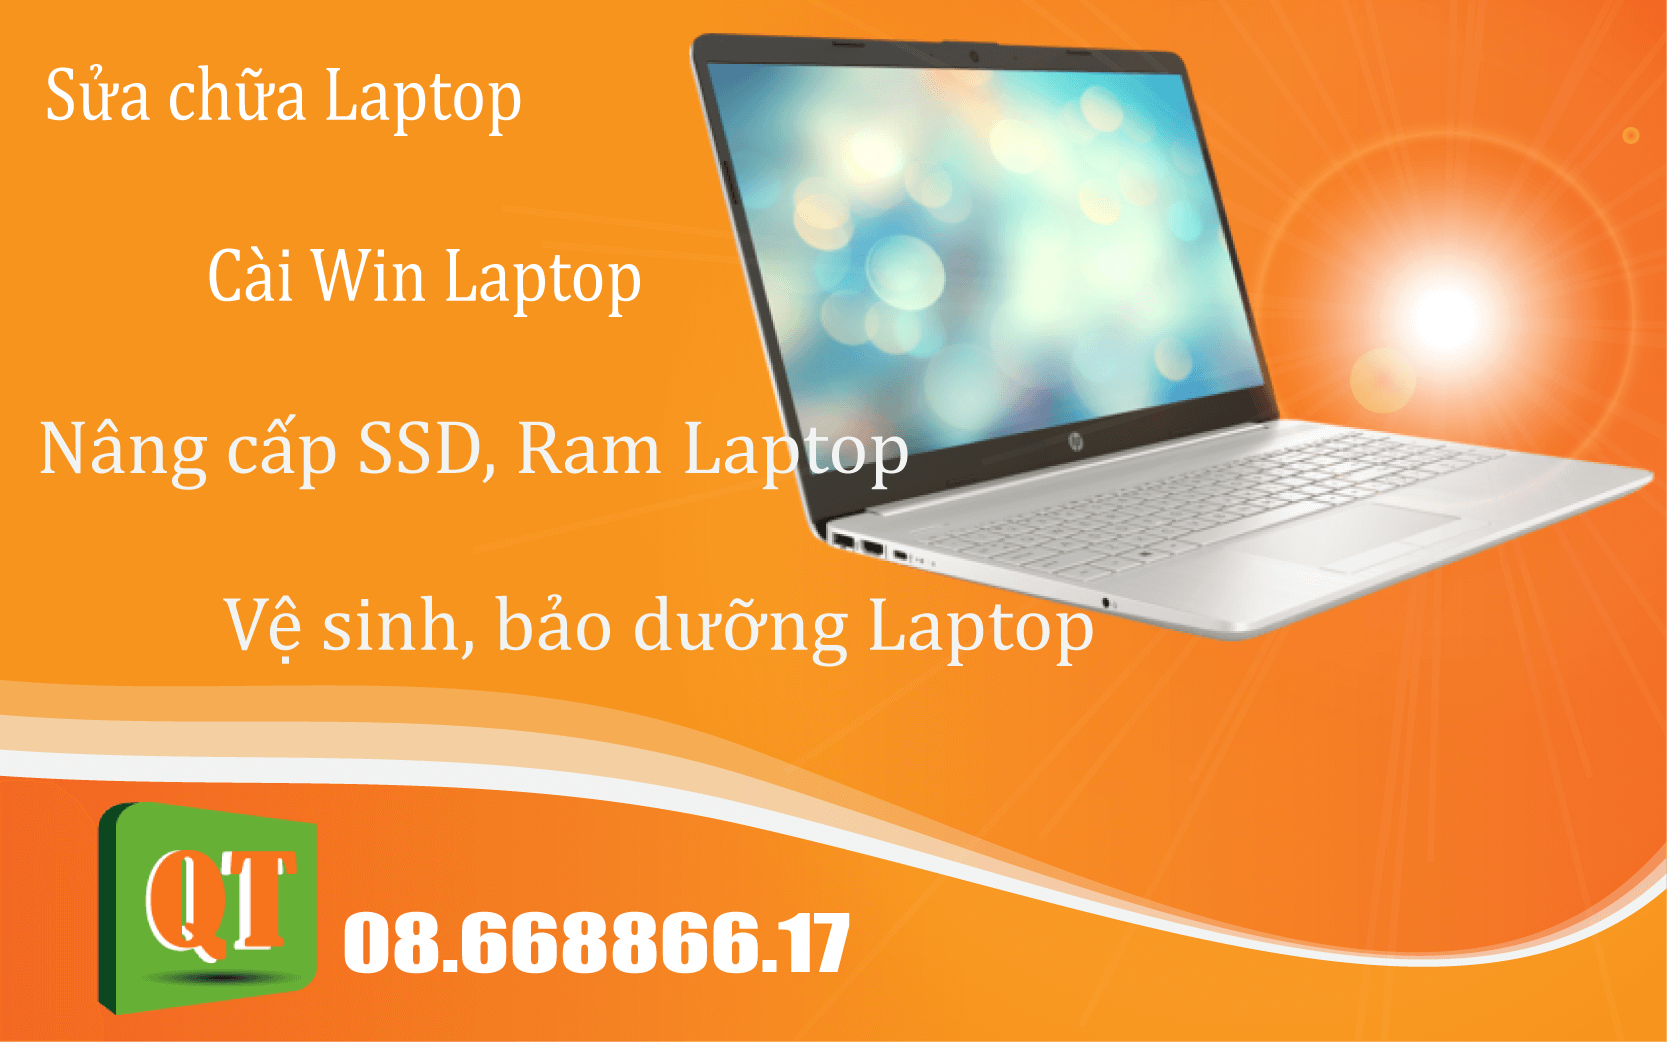 Sửa Laptop Quang Trung